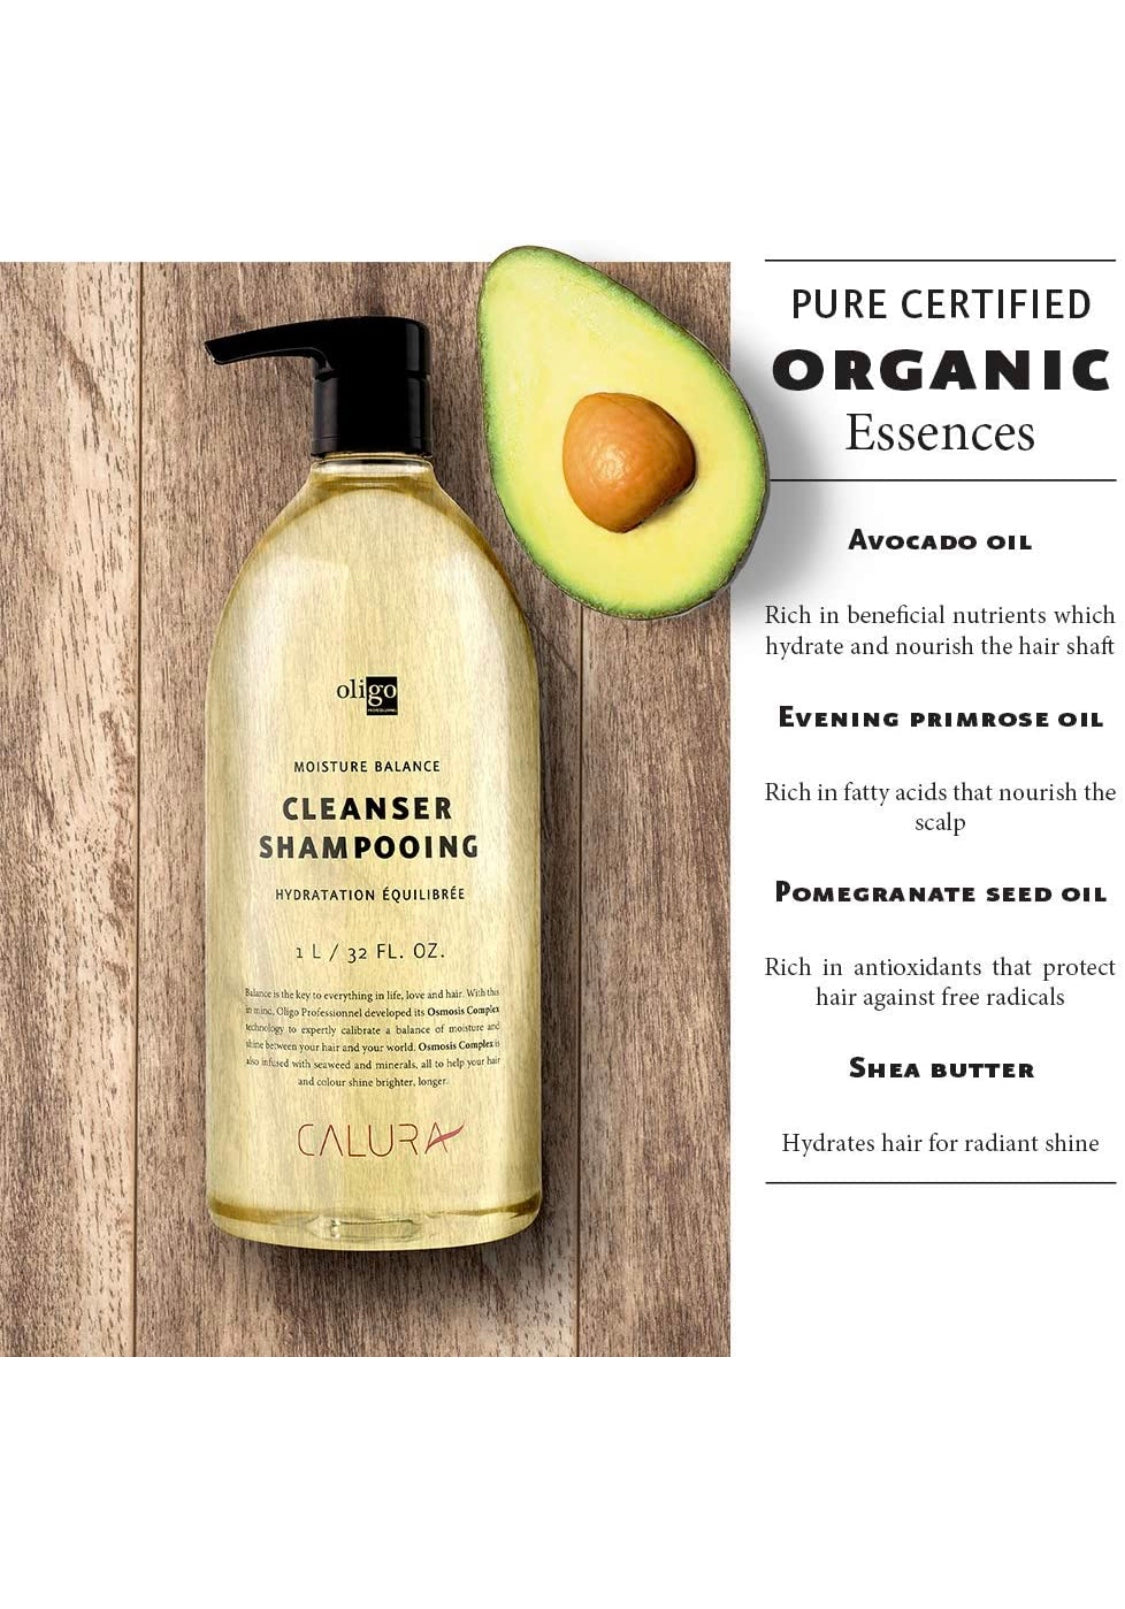 Oligo - moisture balance cleanser shampoo 32 fl. oz./ 1000 ml